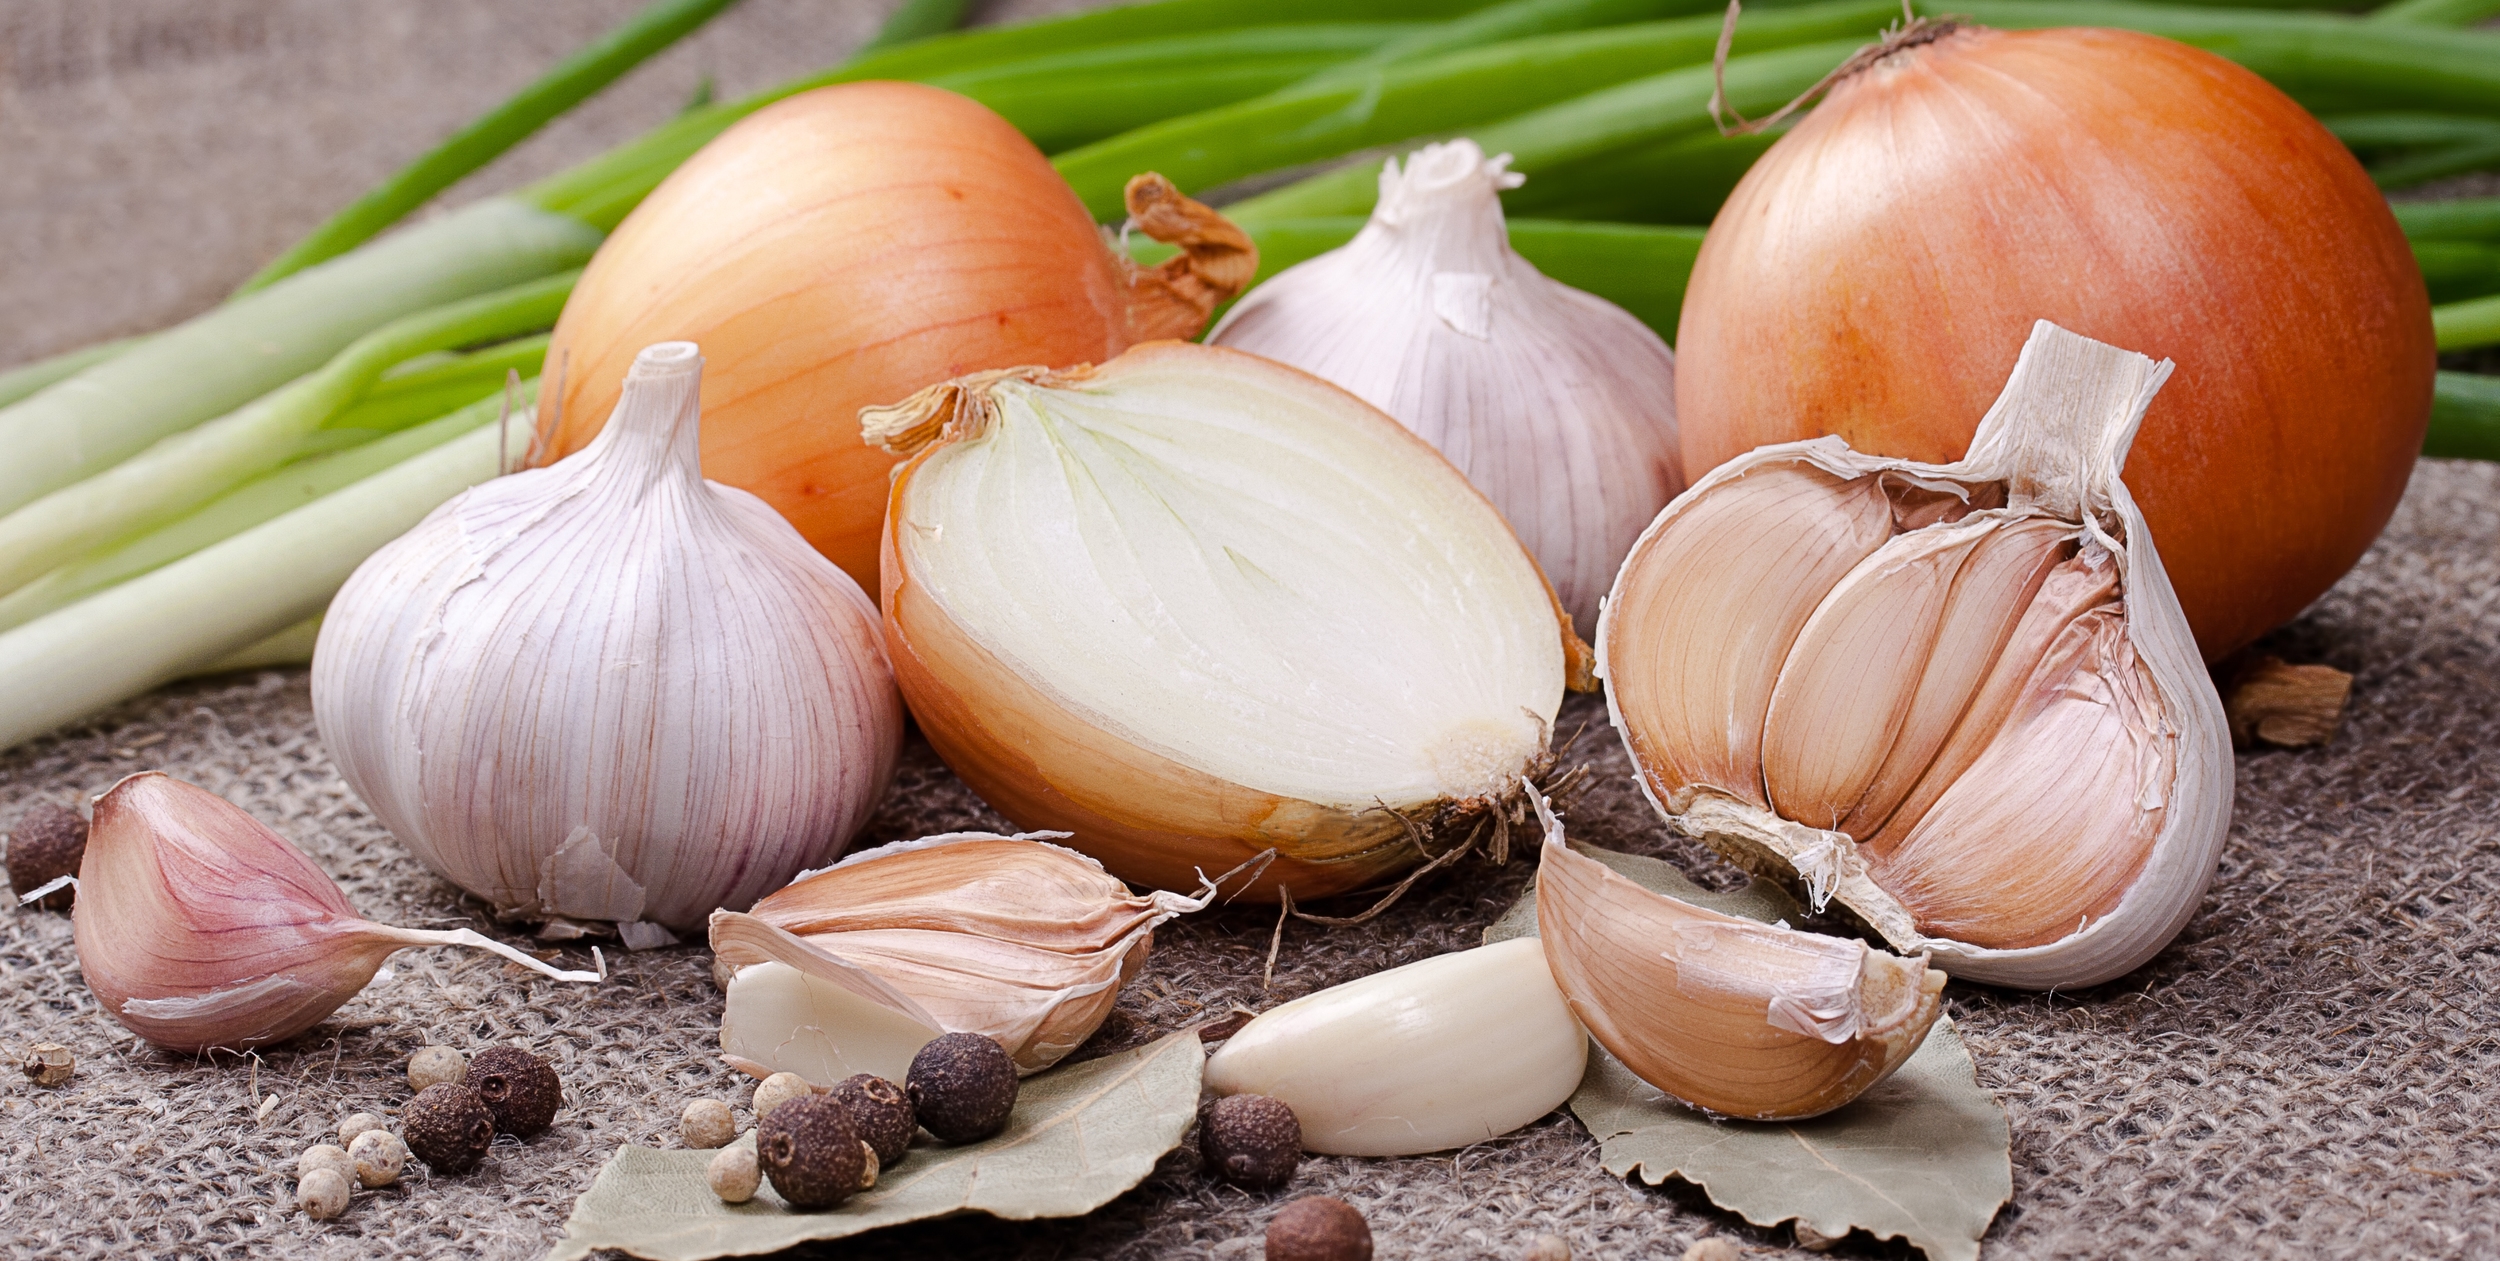 6. Onions/Garlic